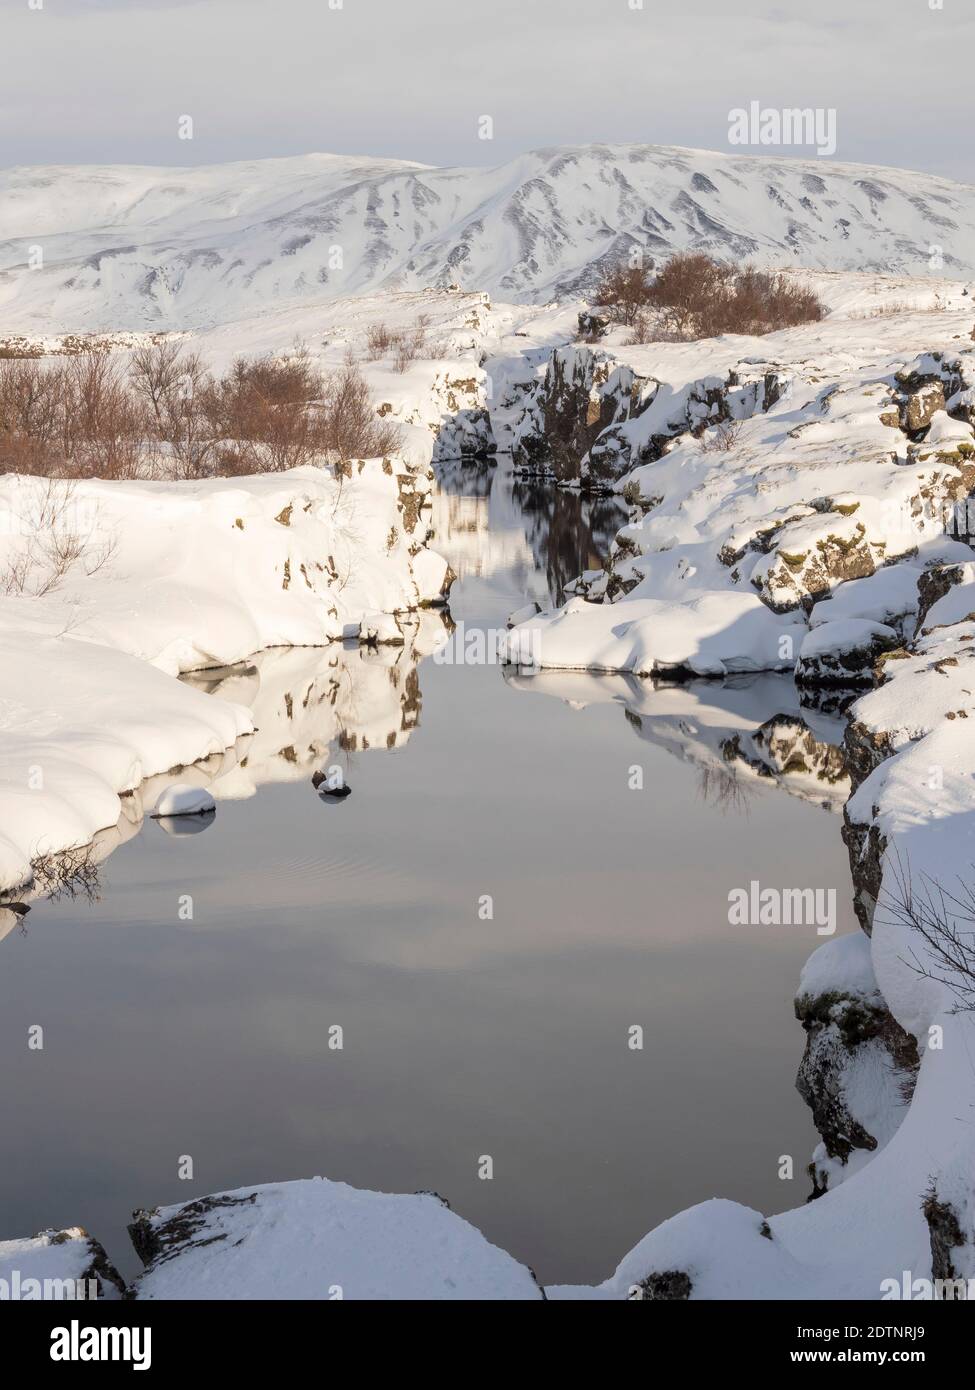 Flosagja Schlucht. Thingvellir Nationalpark bedeckt mit Neuschnee in Island im Winter. Thingvellir ist Teil des UNESCO-Weltkulturerbes. Nördliche Eu Stockfoto